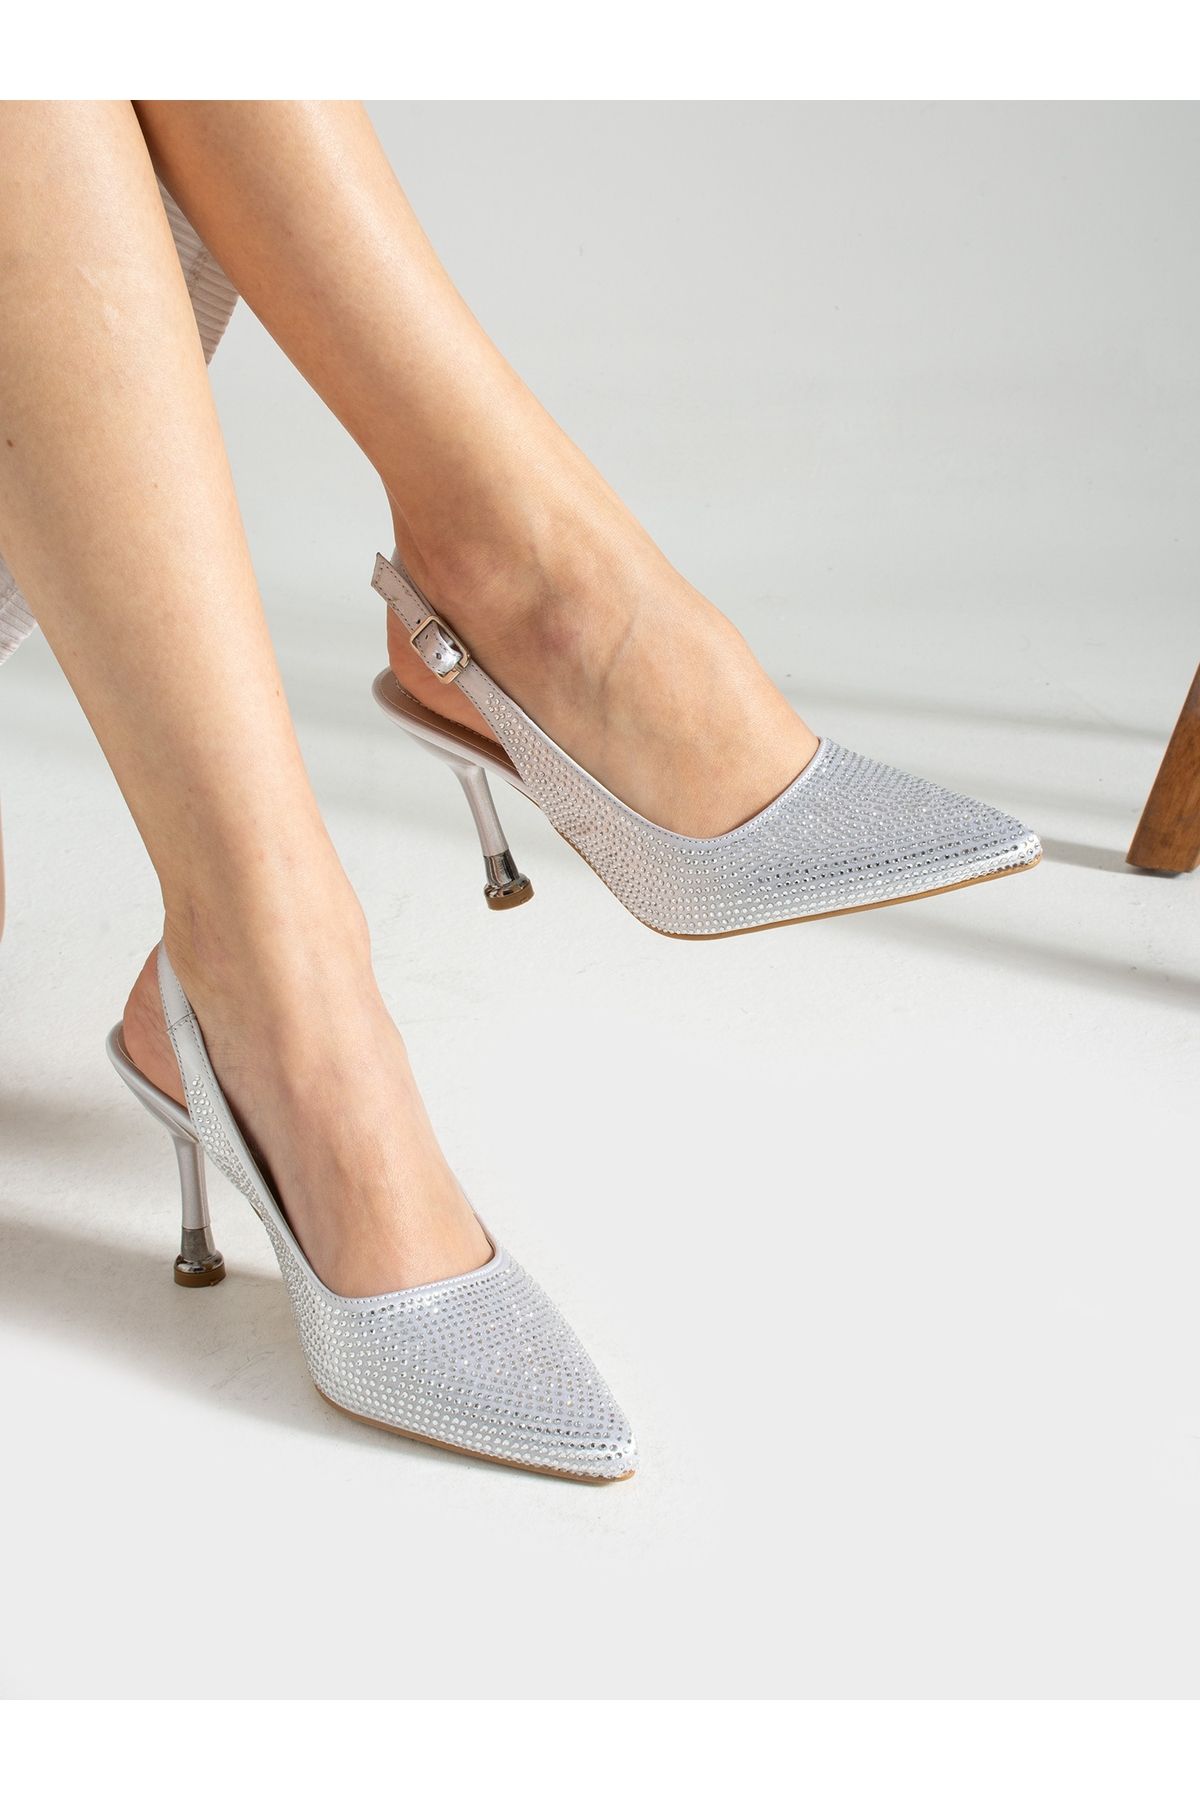 Alemdar Shoes Gümüş Taş Detay Topuklu Kadın Ayakkabı